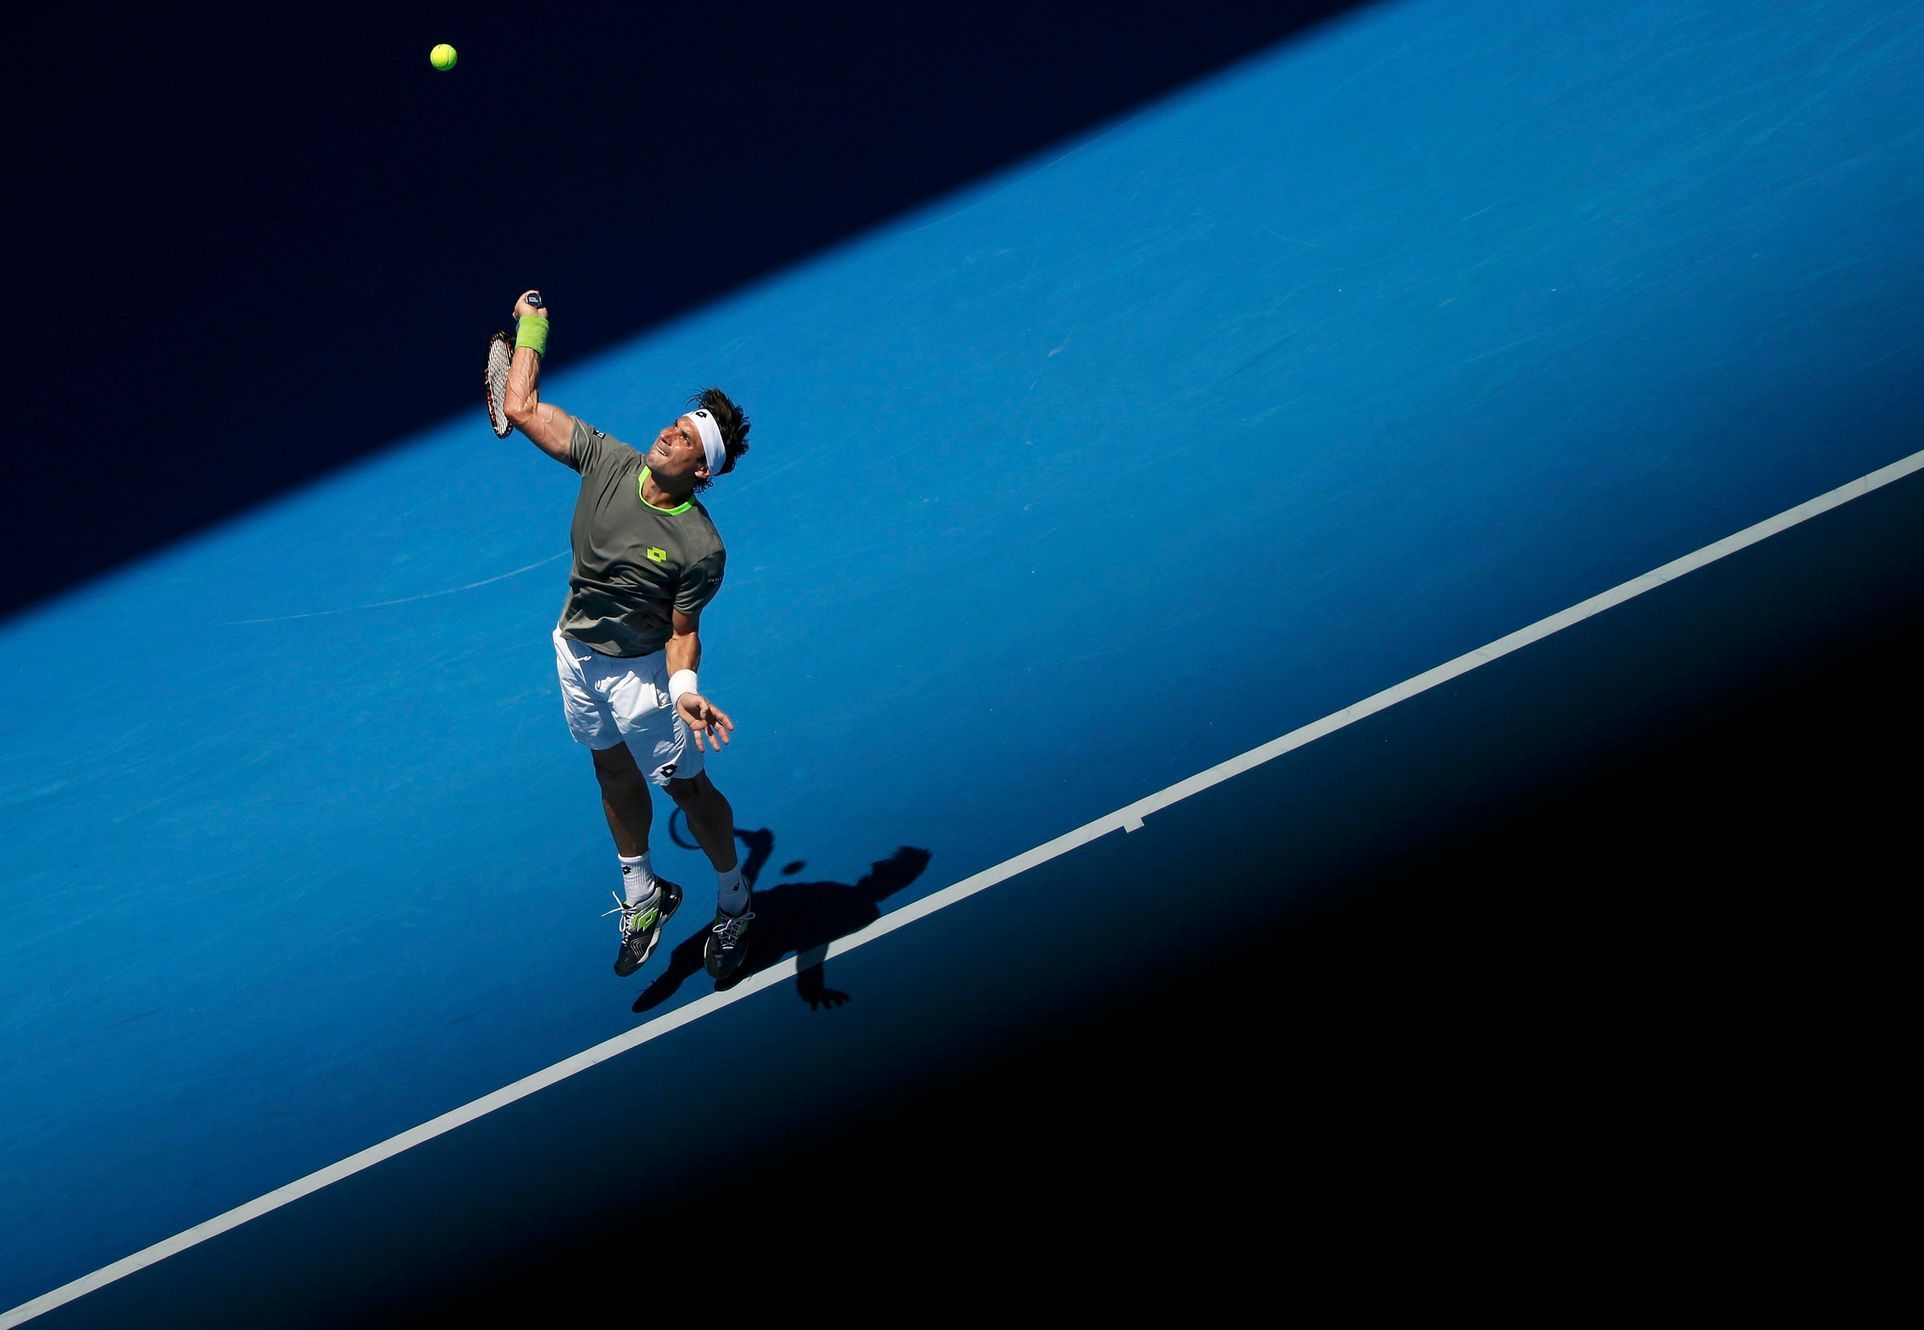 David Ferrer na Australian Open 2014